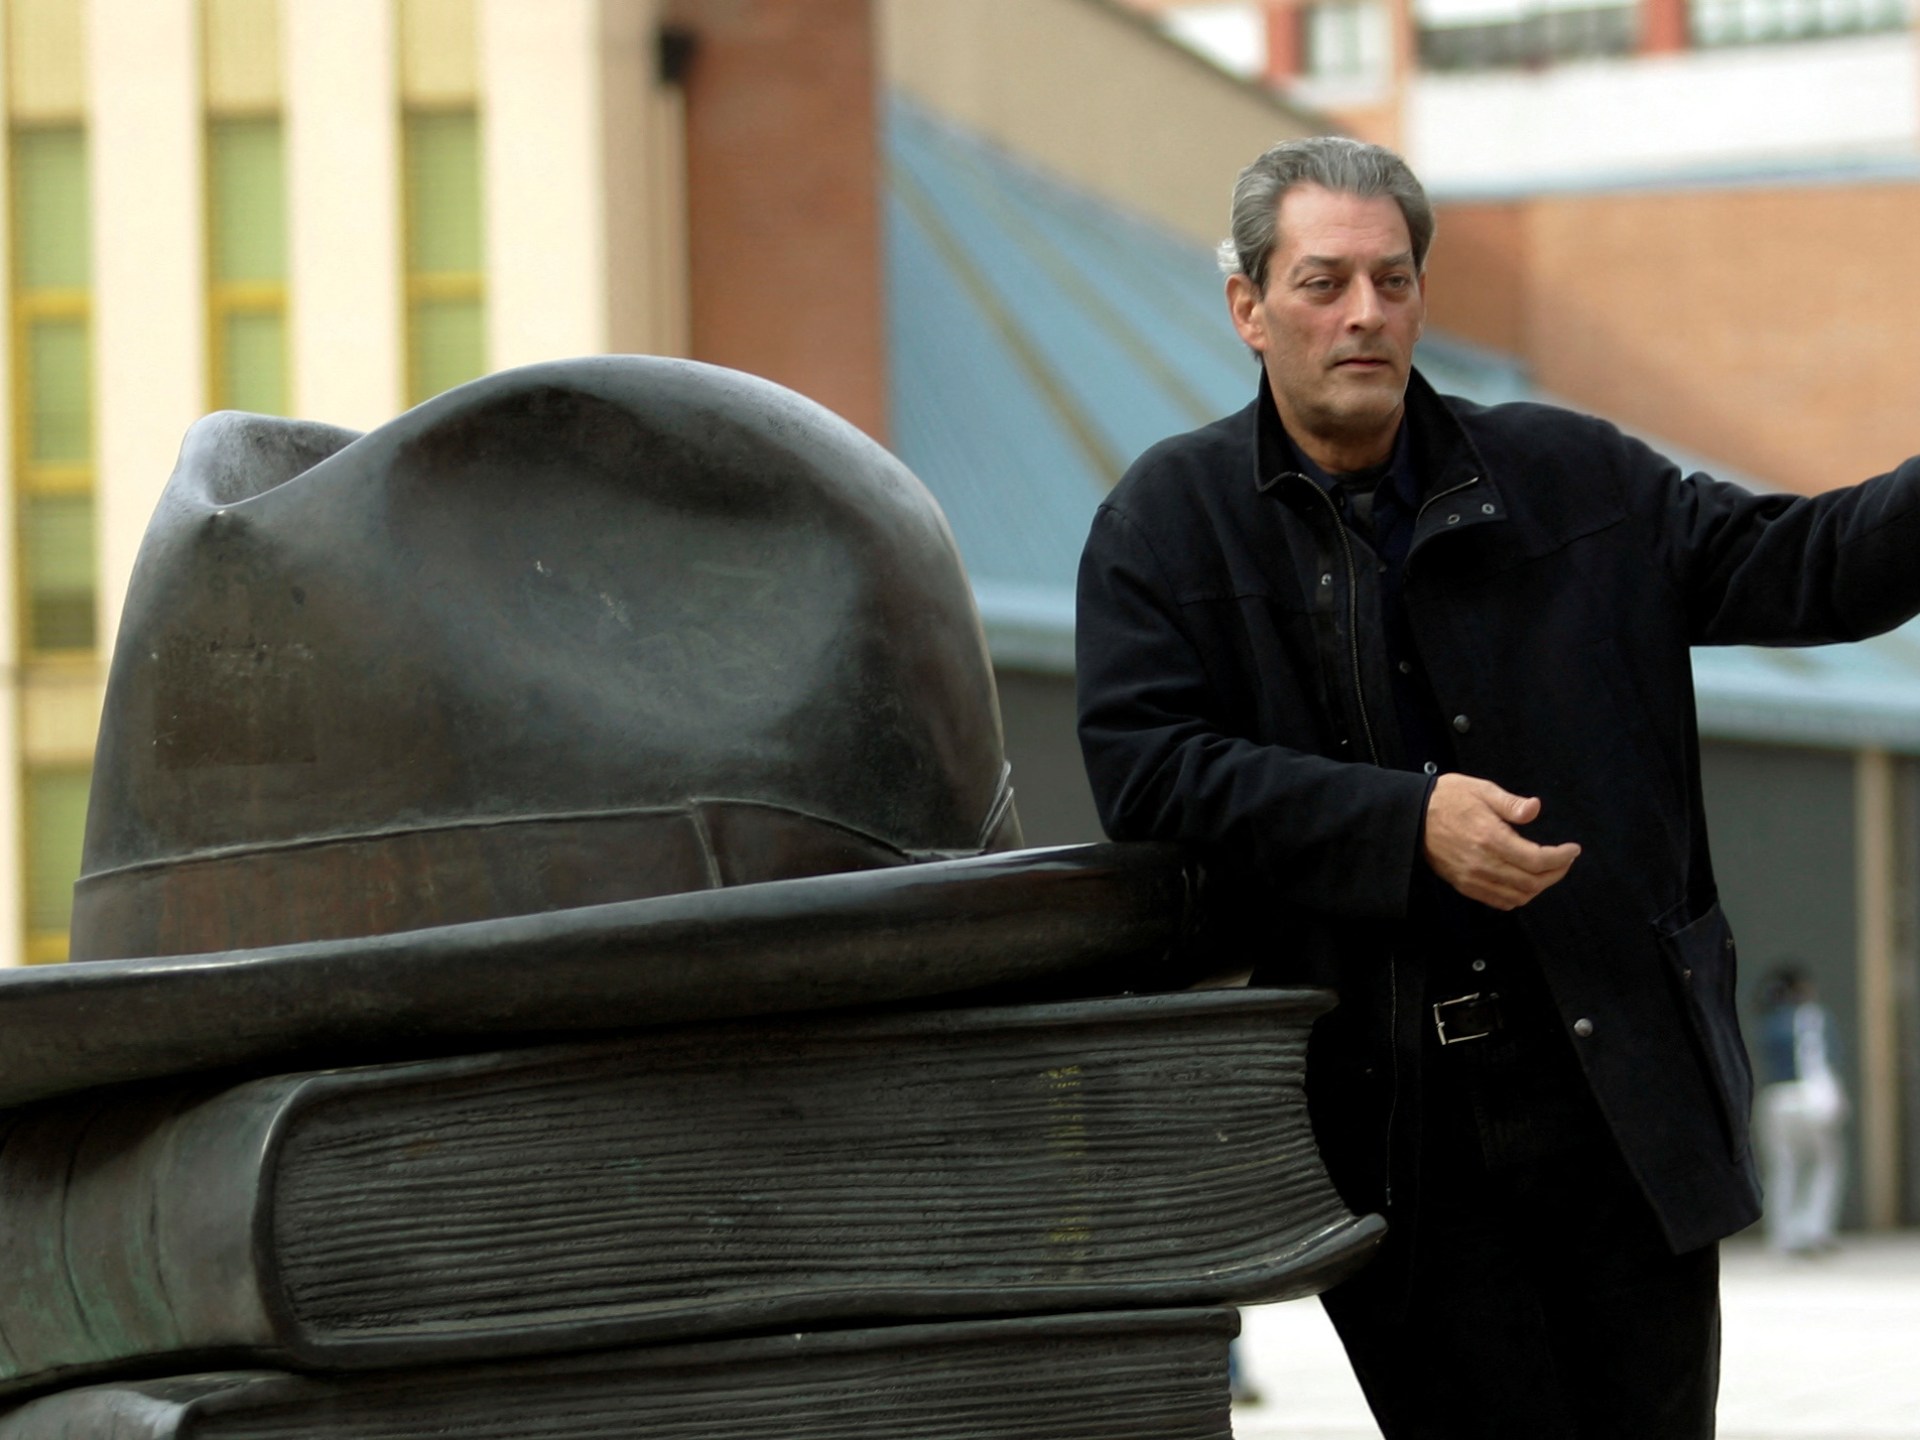 وفاة الكاتب والمخرج الأميركي بول أوستر صاحب “ثلاثية نيويورك” | فن – البوكس نيوز